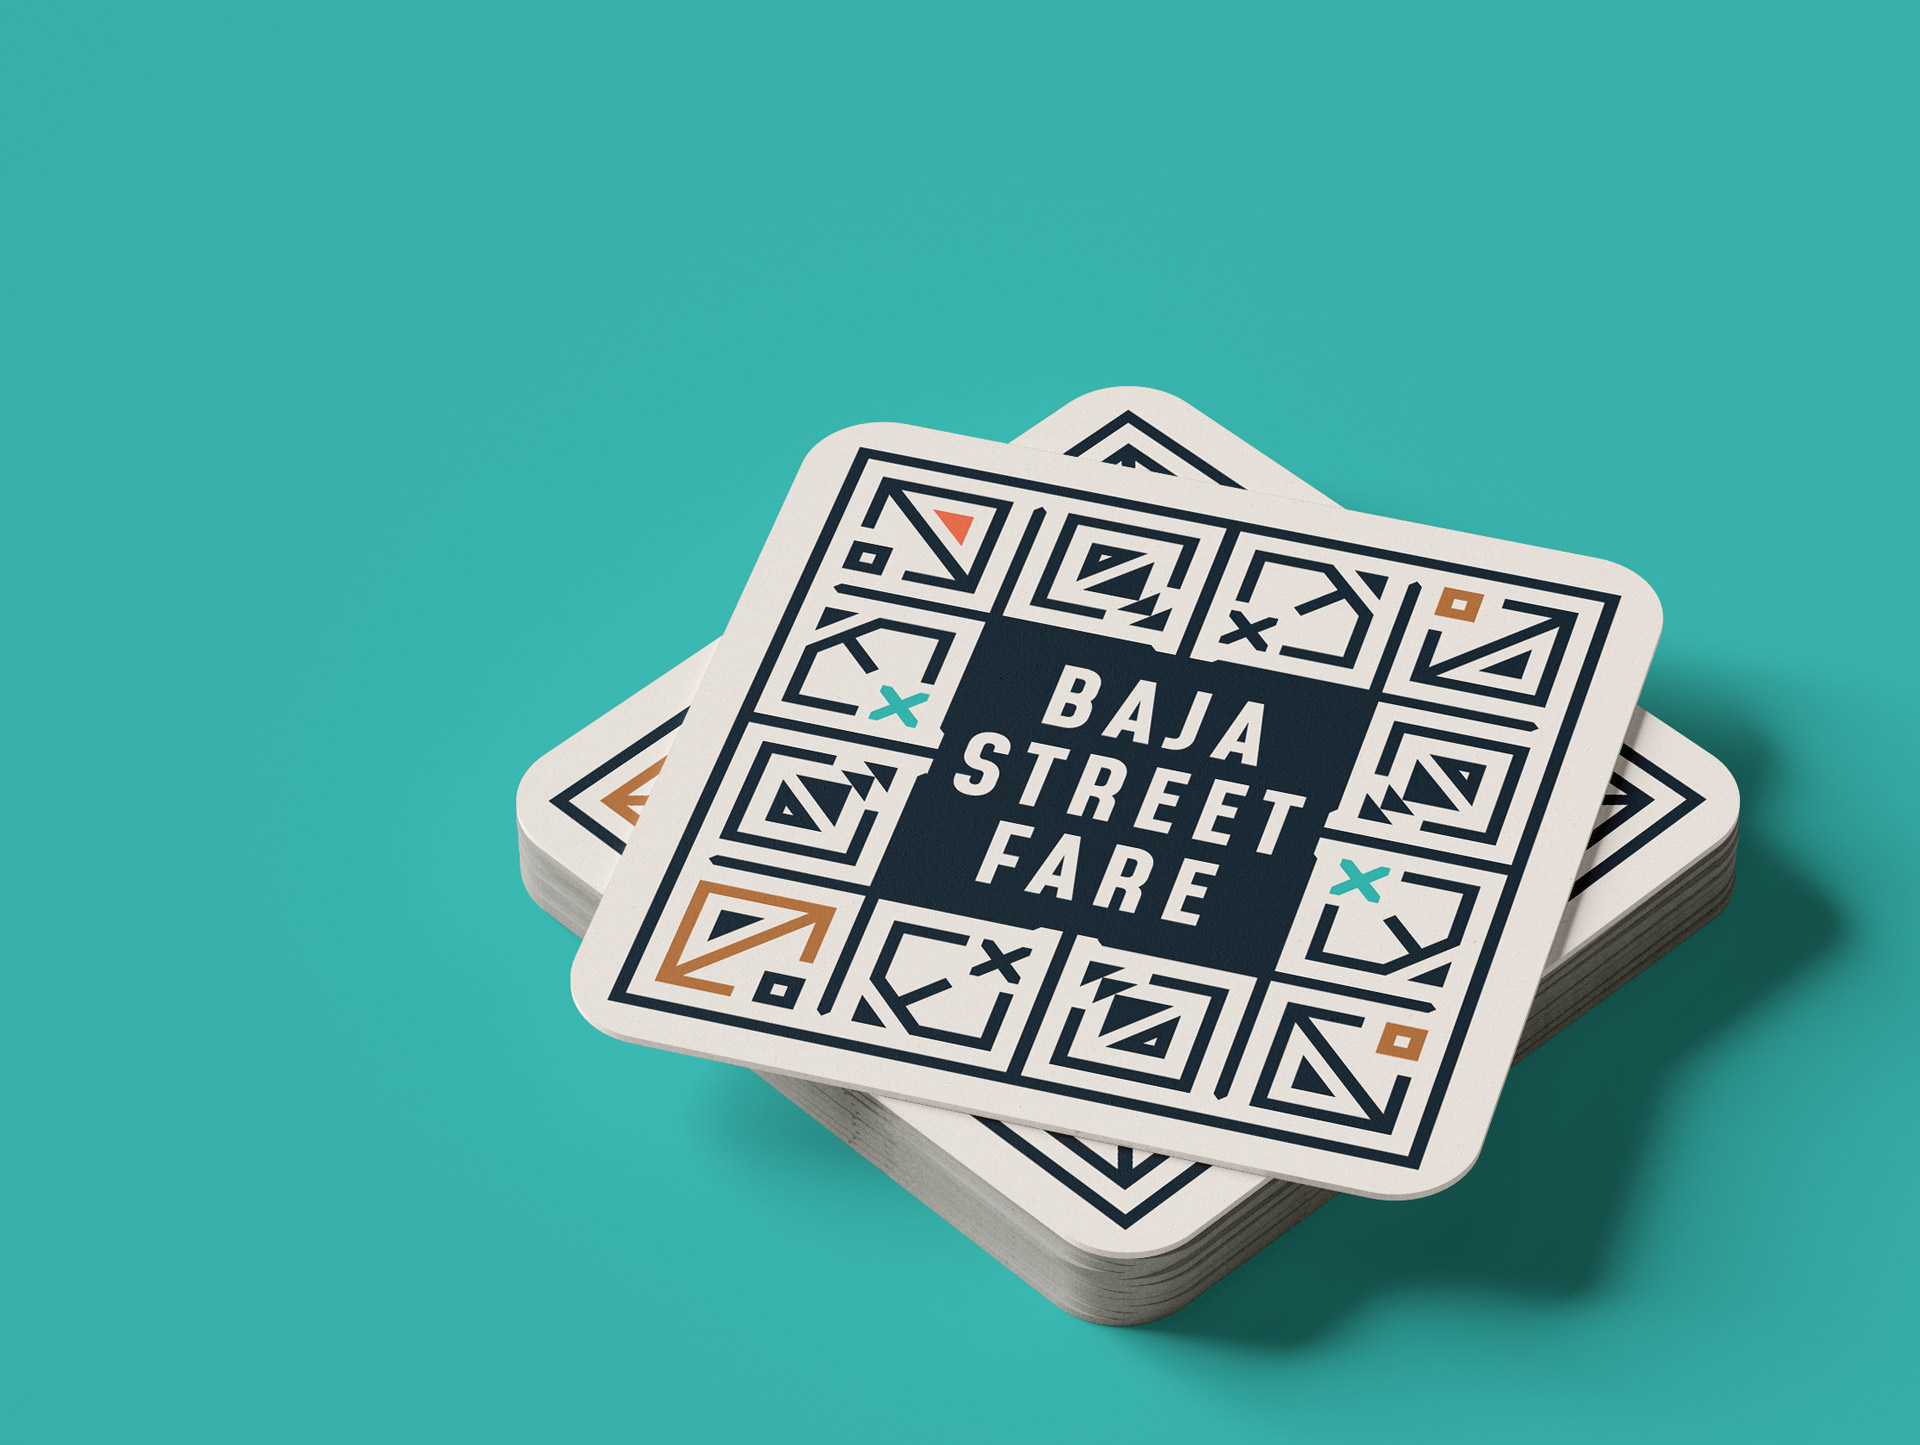 Calle | Restaurant Branding